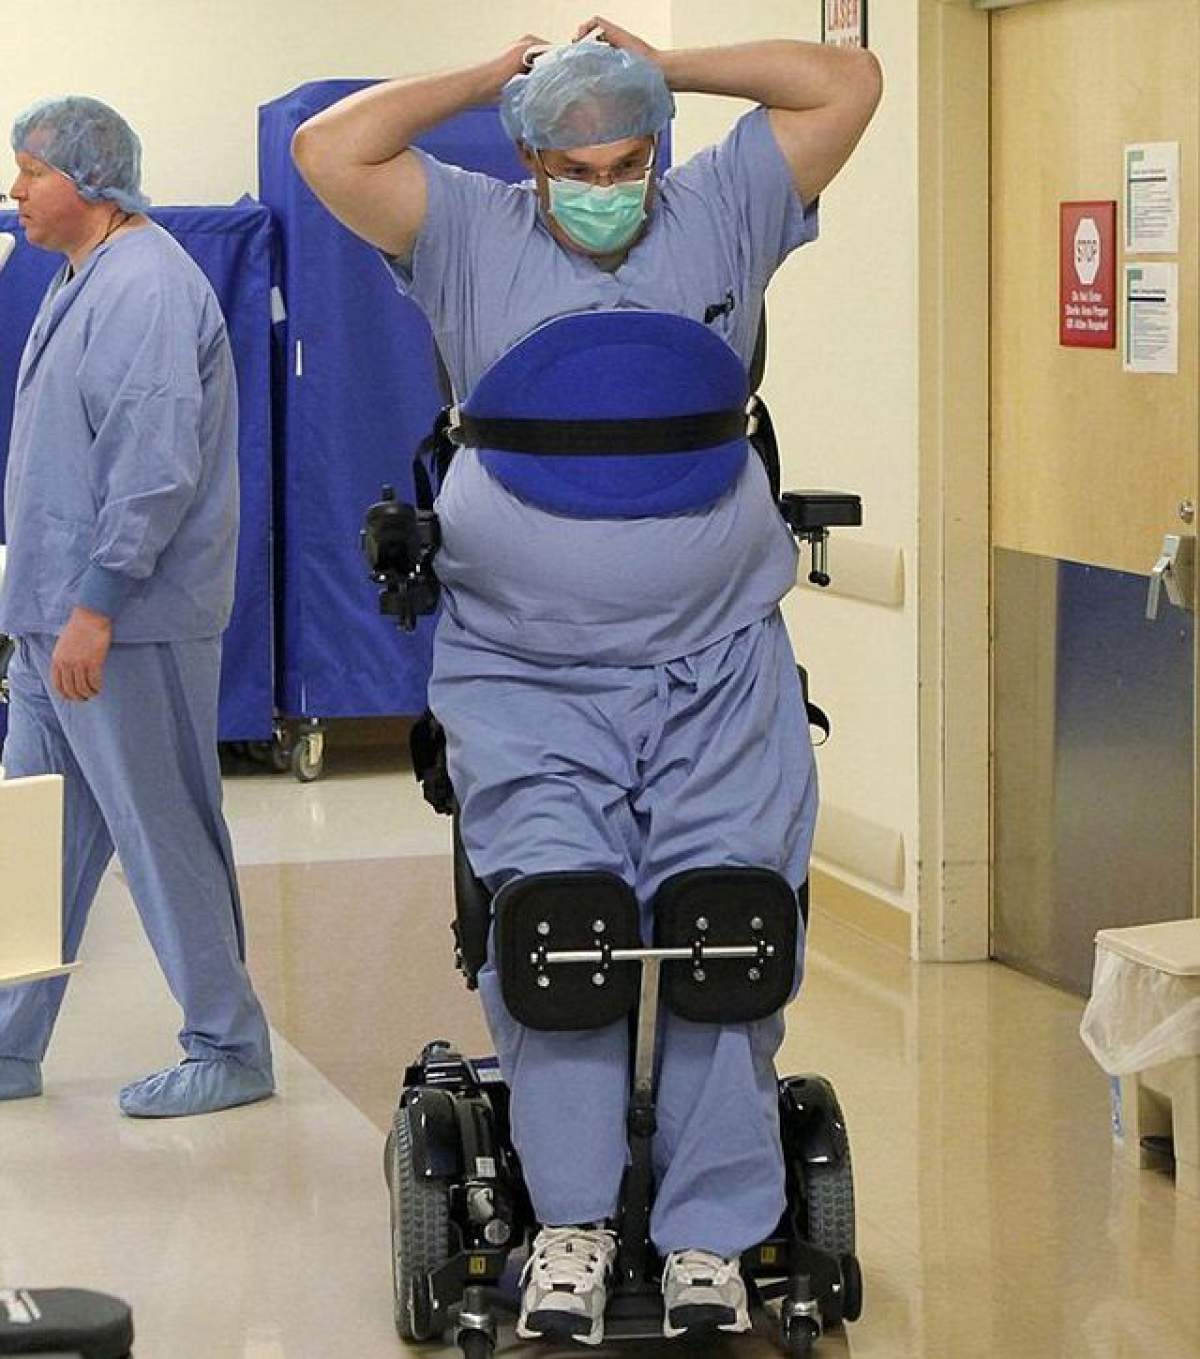 VIDEO IMPRESIONANT Un medic paralizat continuă să salveze vieţi! Uite-l cum operează, legat stâns de scaunul cu rotile